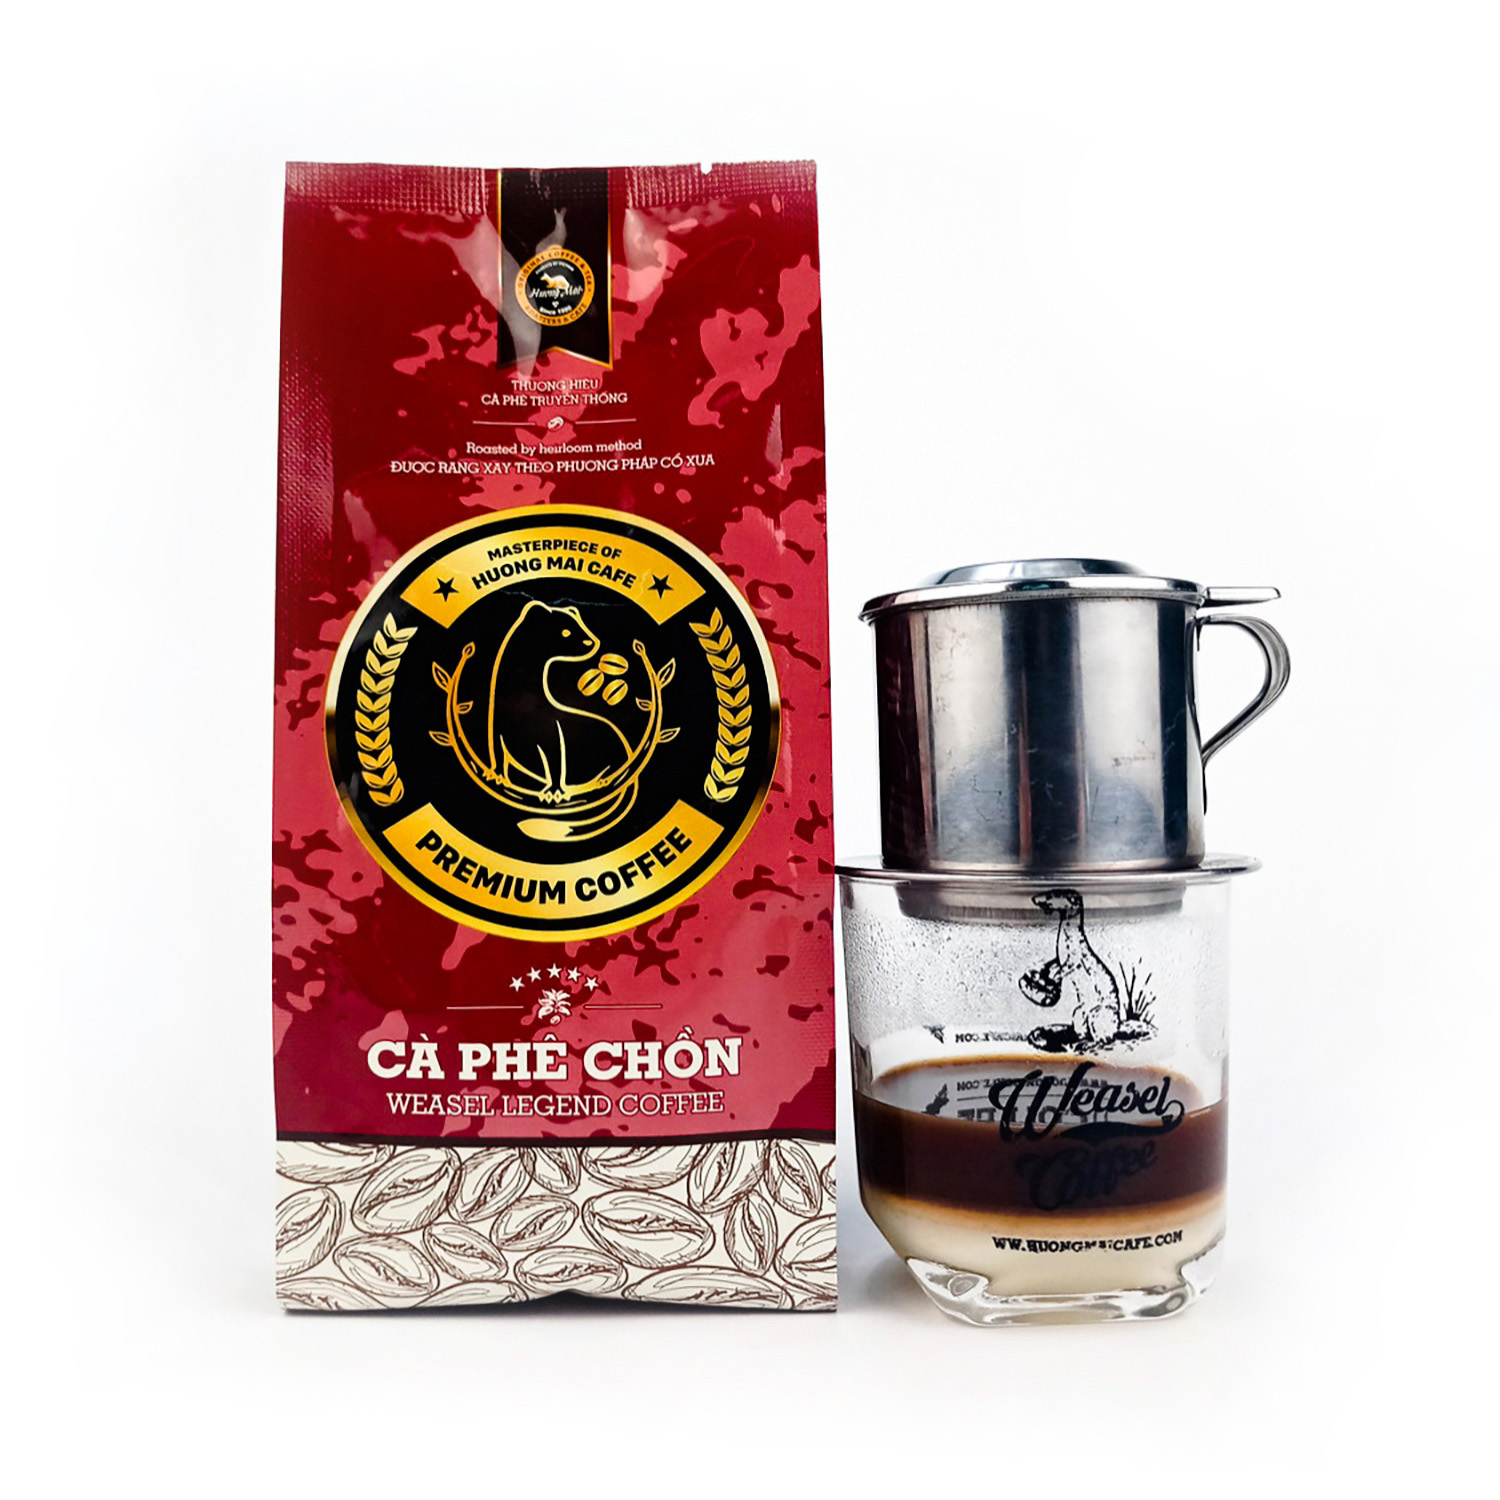 Cà phê chồn Arabica nguyên chất 100% thượng hạng Hương Mai Cafe Premium Weasel Legend Coffee - Cà phê pha phin không pha trộn, không hương liệu - Dạng bột 250g